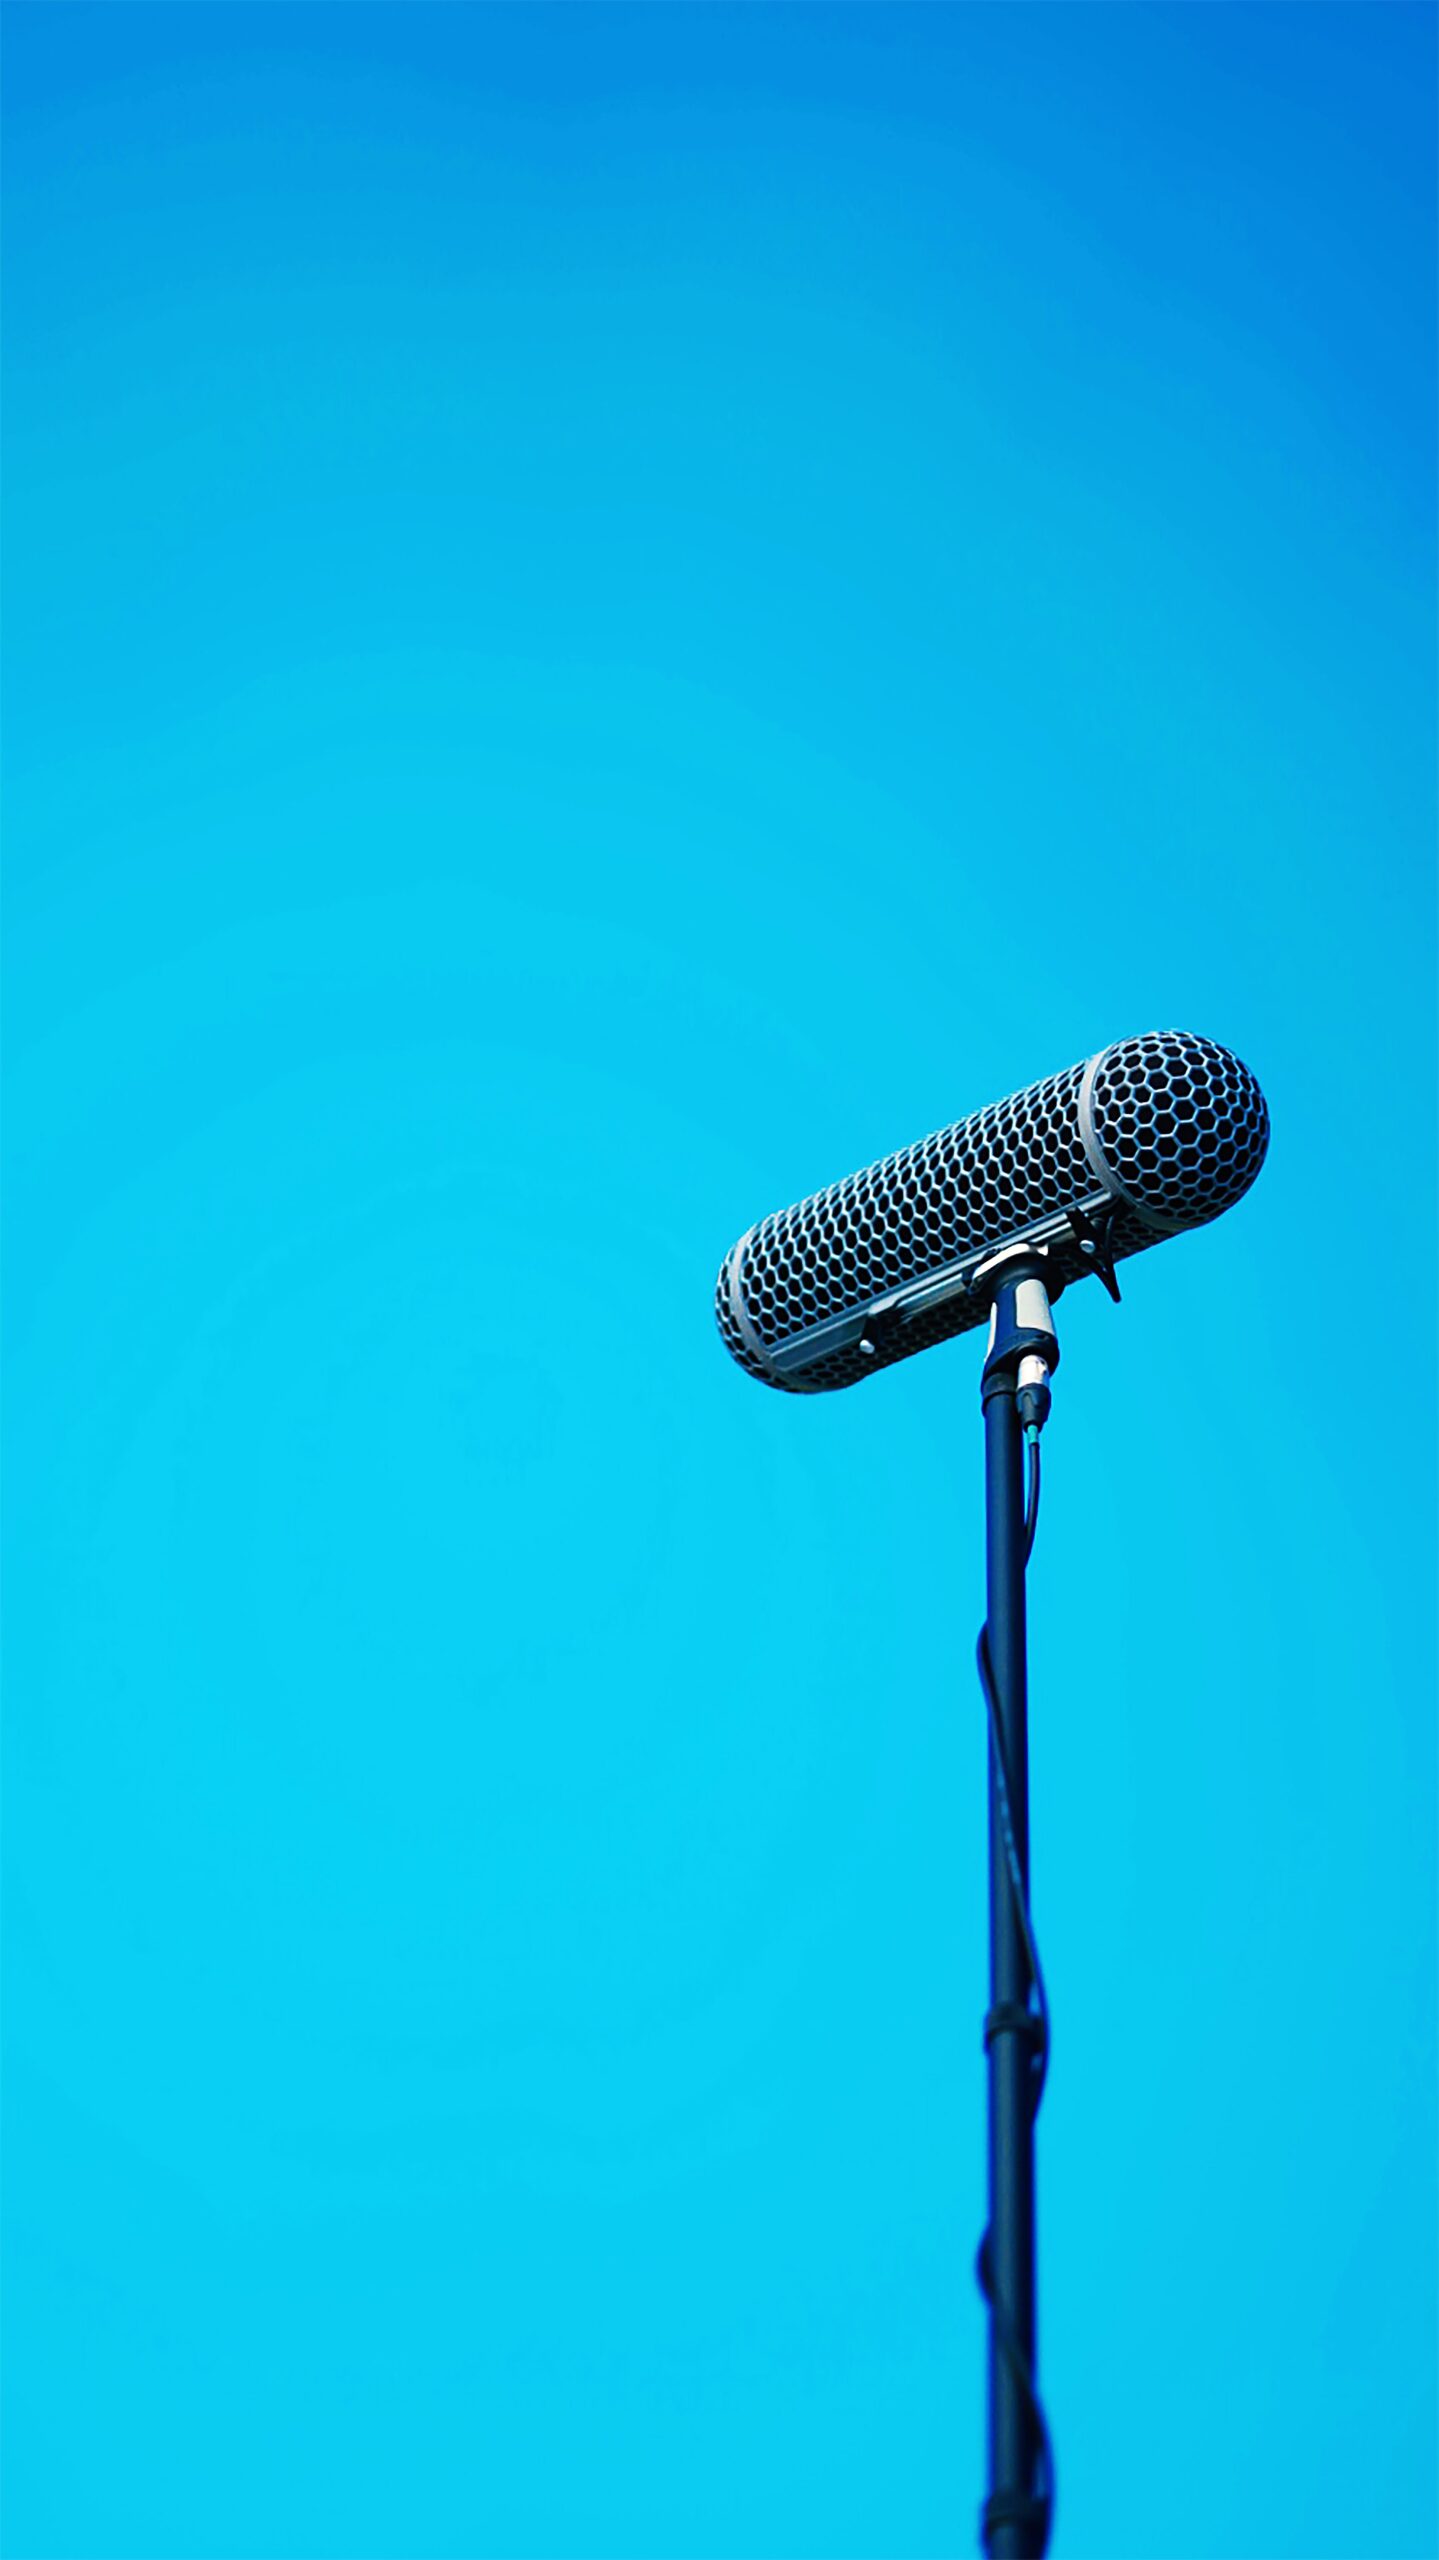 Een zwarte microfoon tegen een blauwe achtergrond.